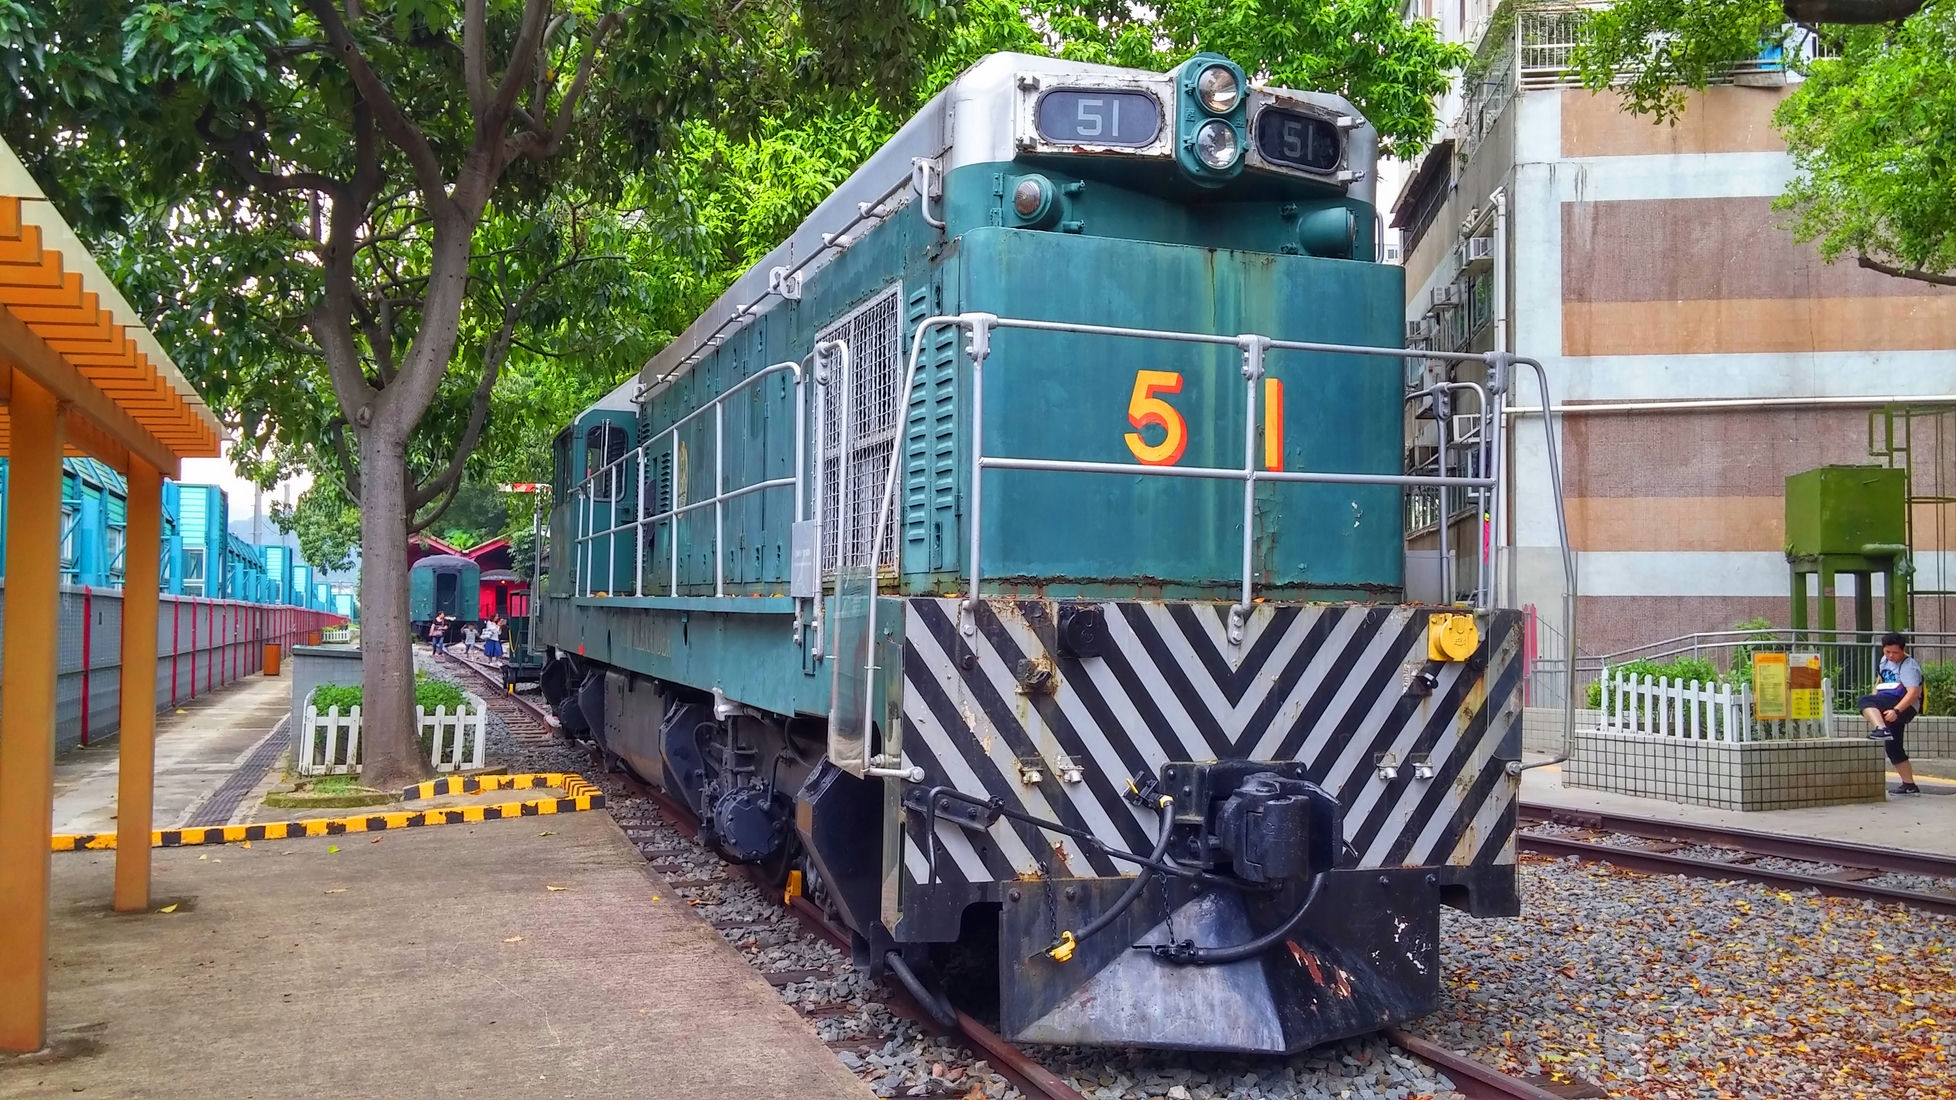 Tai Po Railway Museum locomotiveg-Kong-Private-Tour